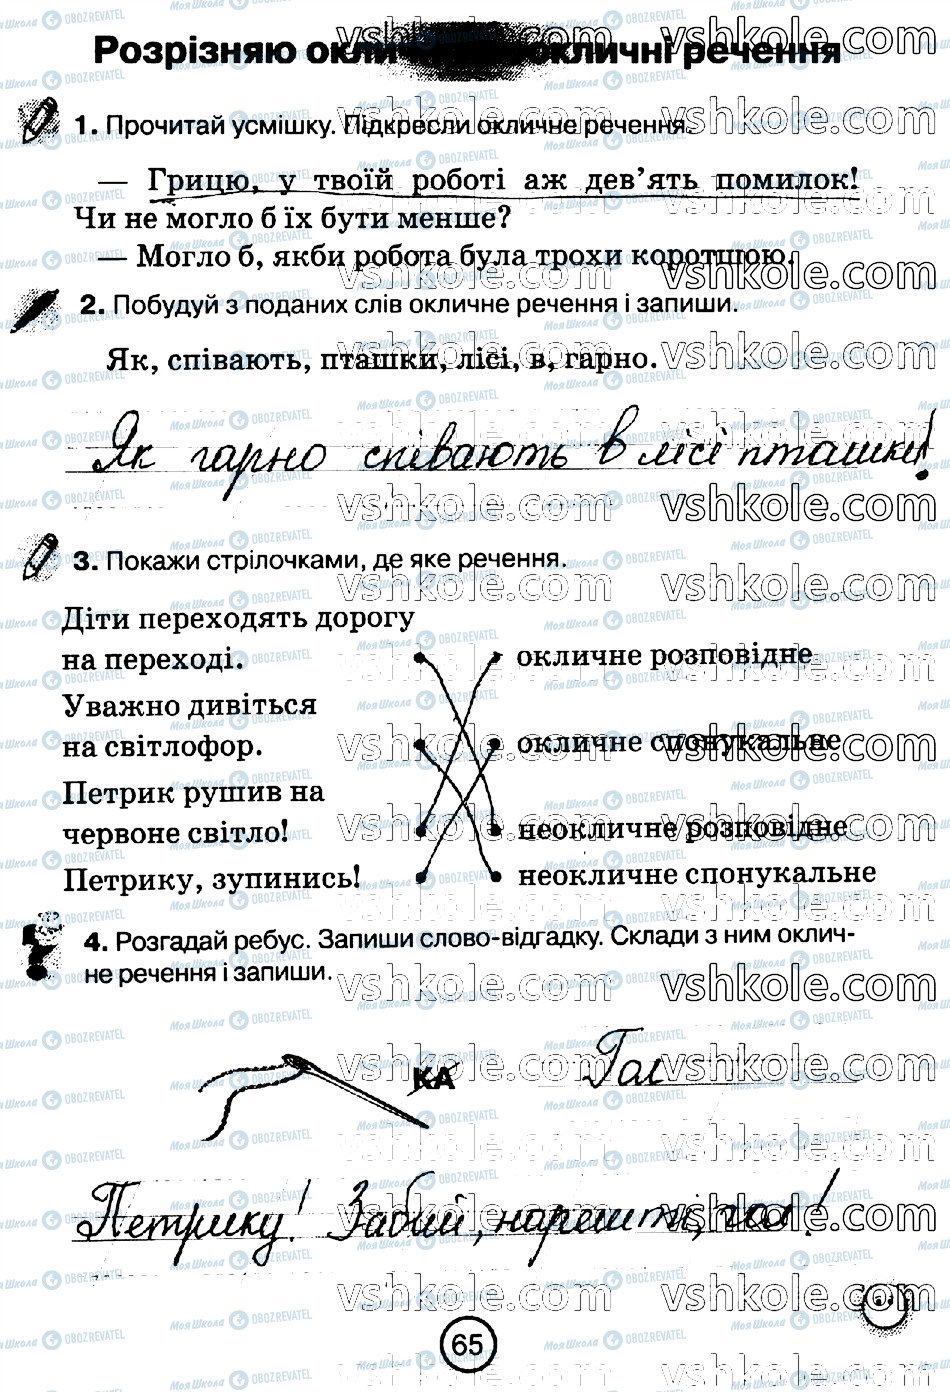 ГДЗ Укр мова 2 класс страница стр65